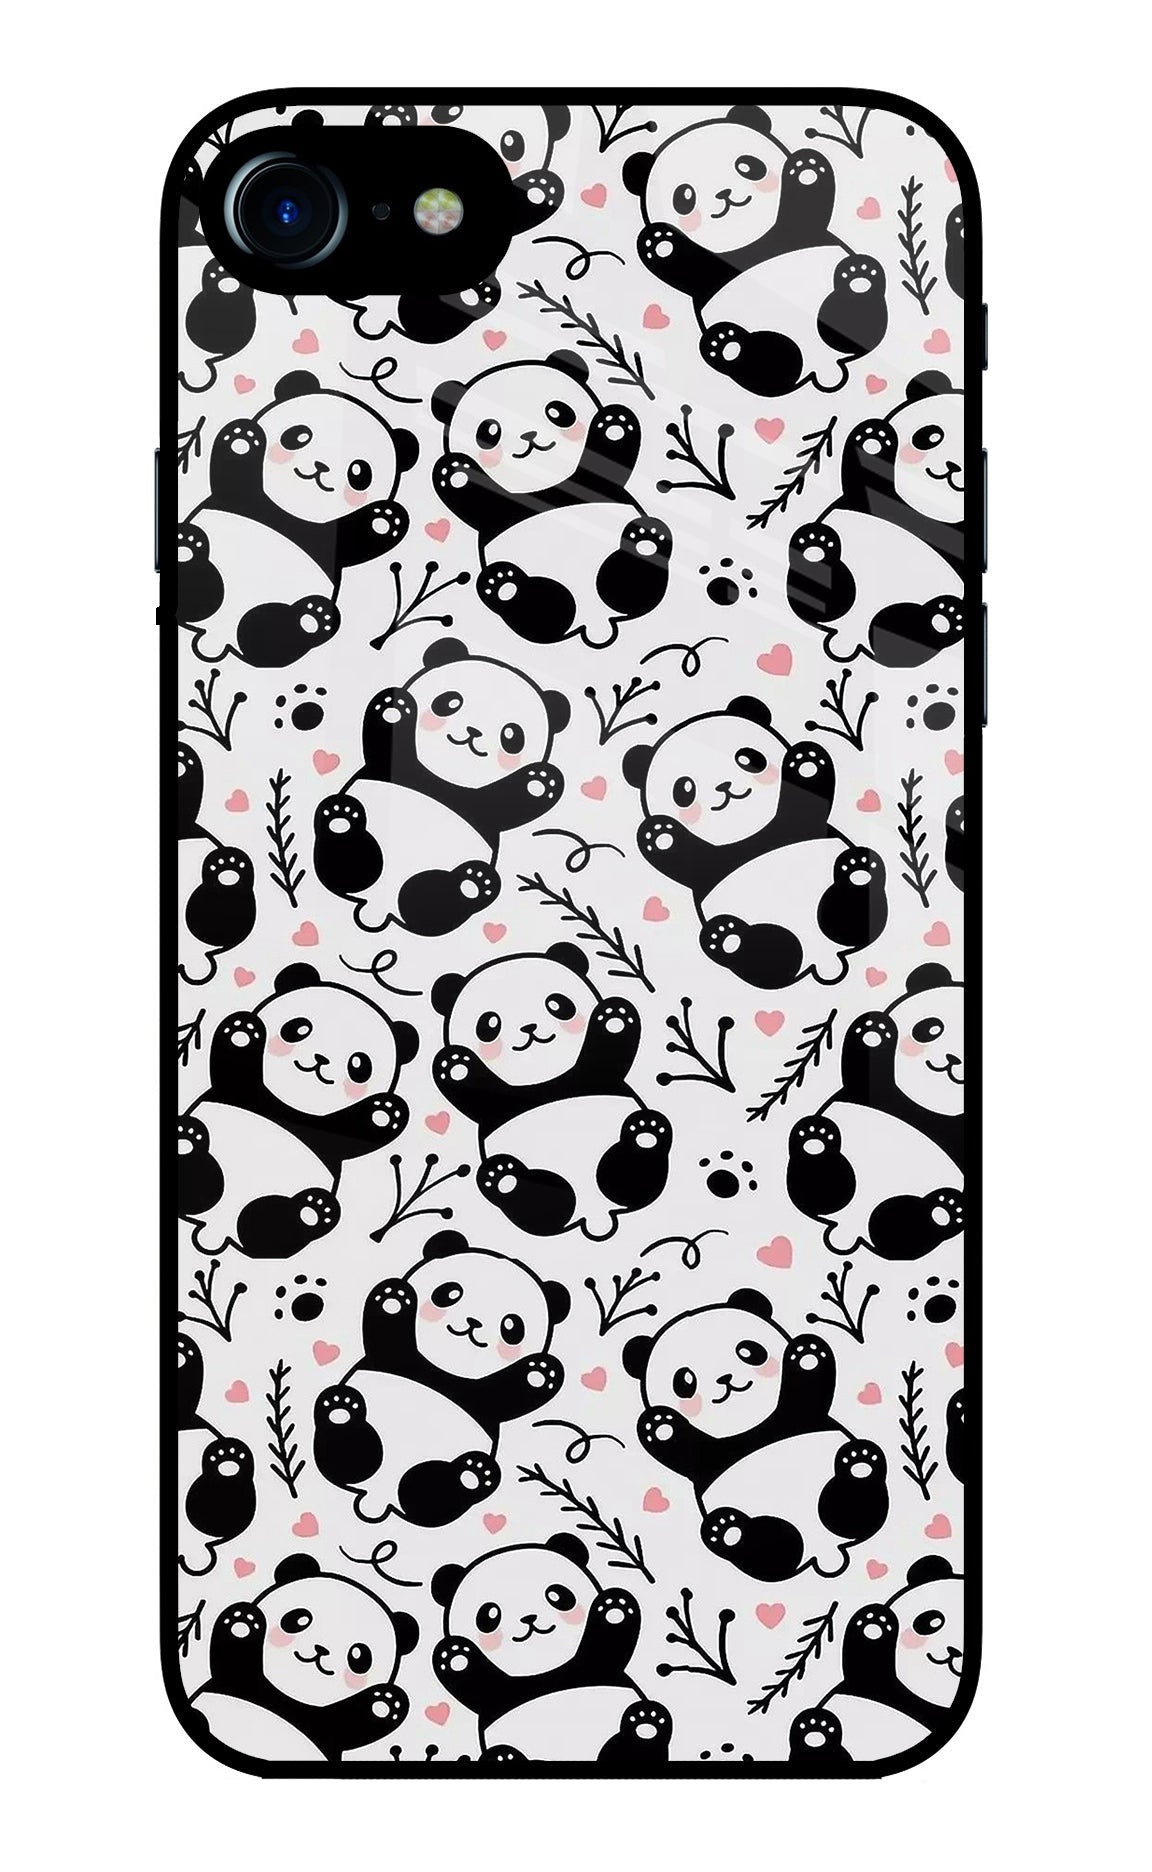 Cute Panda iPhone 8/SE 2020 Glass Case